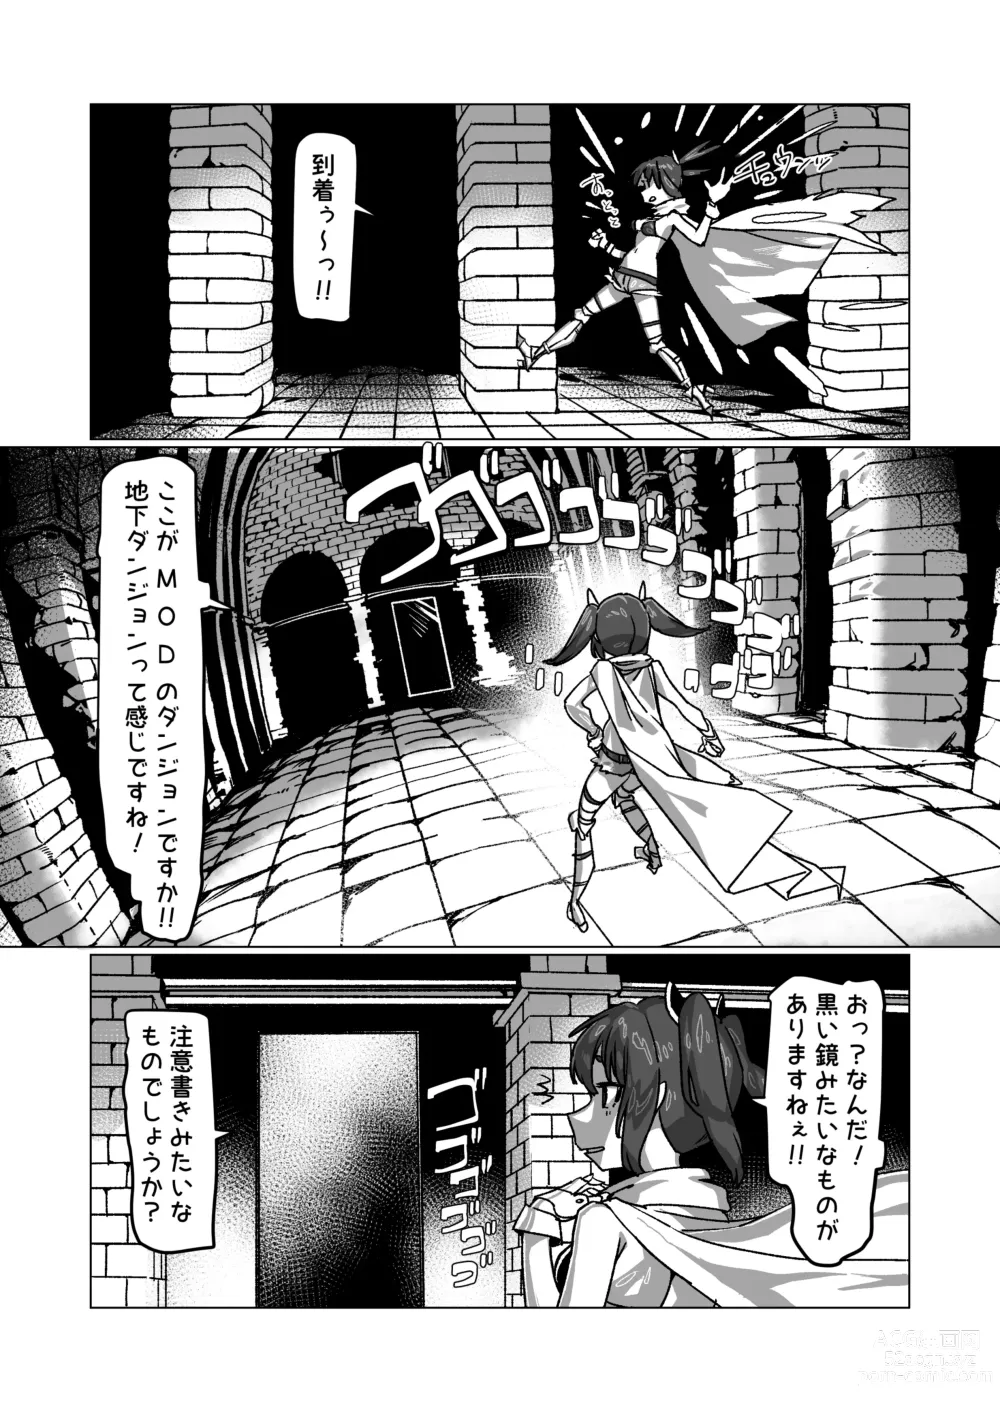 Page 5 of doujinshi Jibun no Koto o   Tohoku Kiritan da to Omoikondeiru Kiritan  no Full Dive VR Dungeon